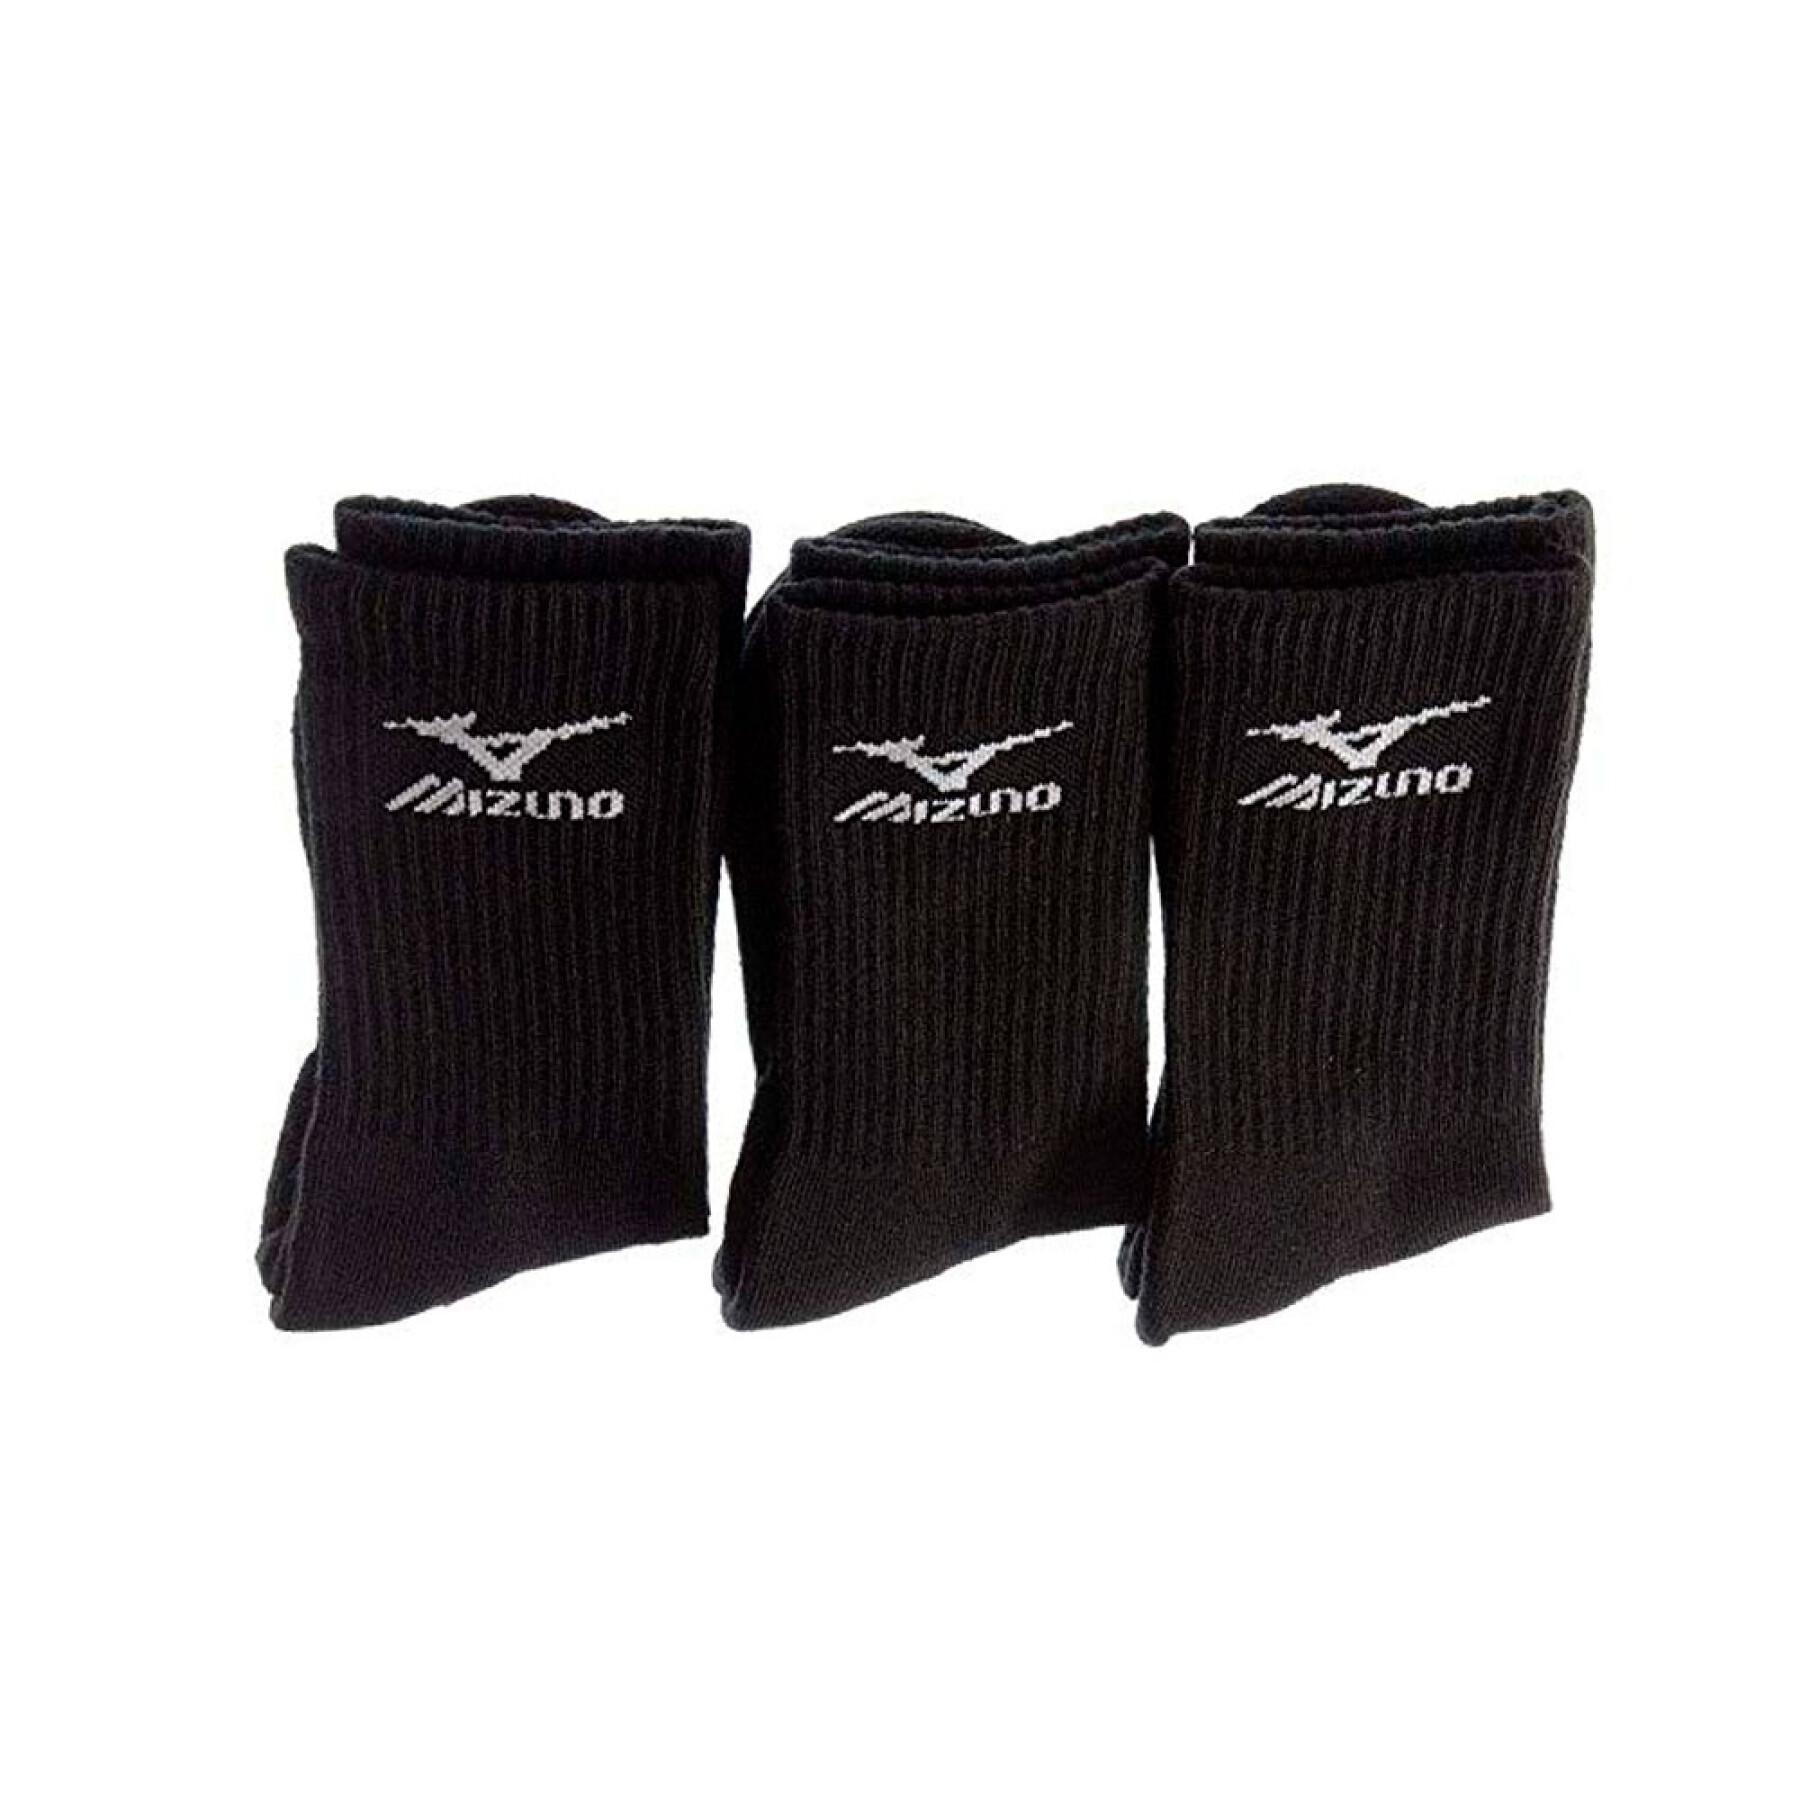 Set of 3 socks Mizuno Training